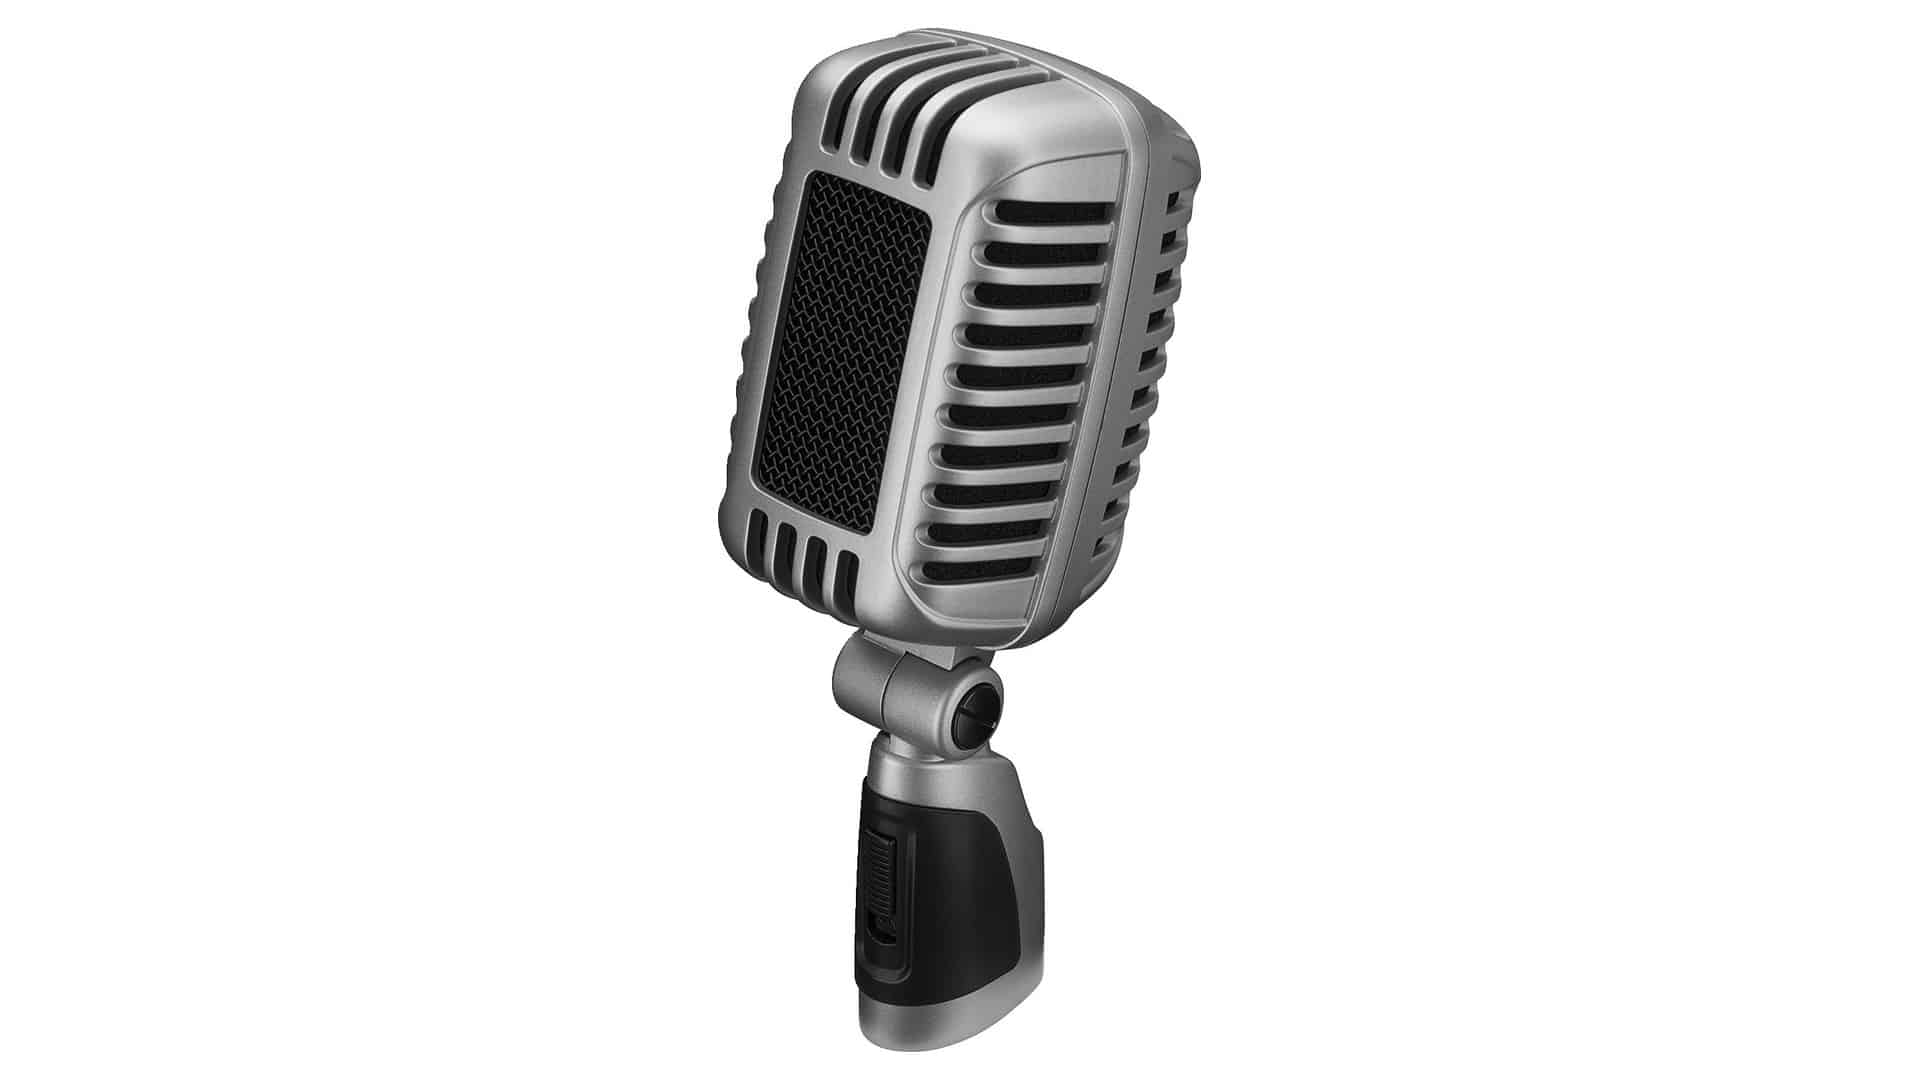 in Schwarz Sprach-Verstärker mit Supernieren-Charakteristik inklusive Mikrofon-Halter Adapter-Schraube und Mikrofon-Tasche IMG STAGELINE DM-7 dynamisches Mikrofon für Bühne und Gesang